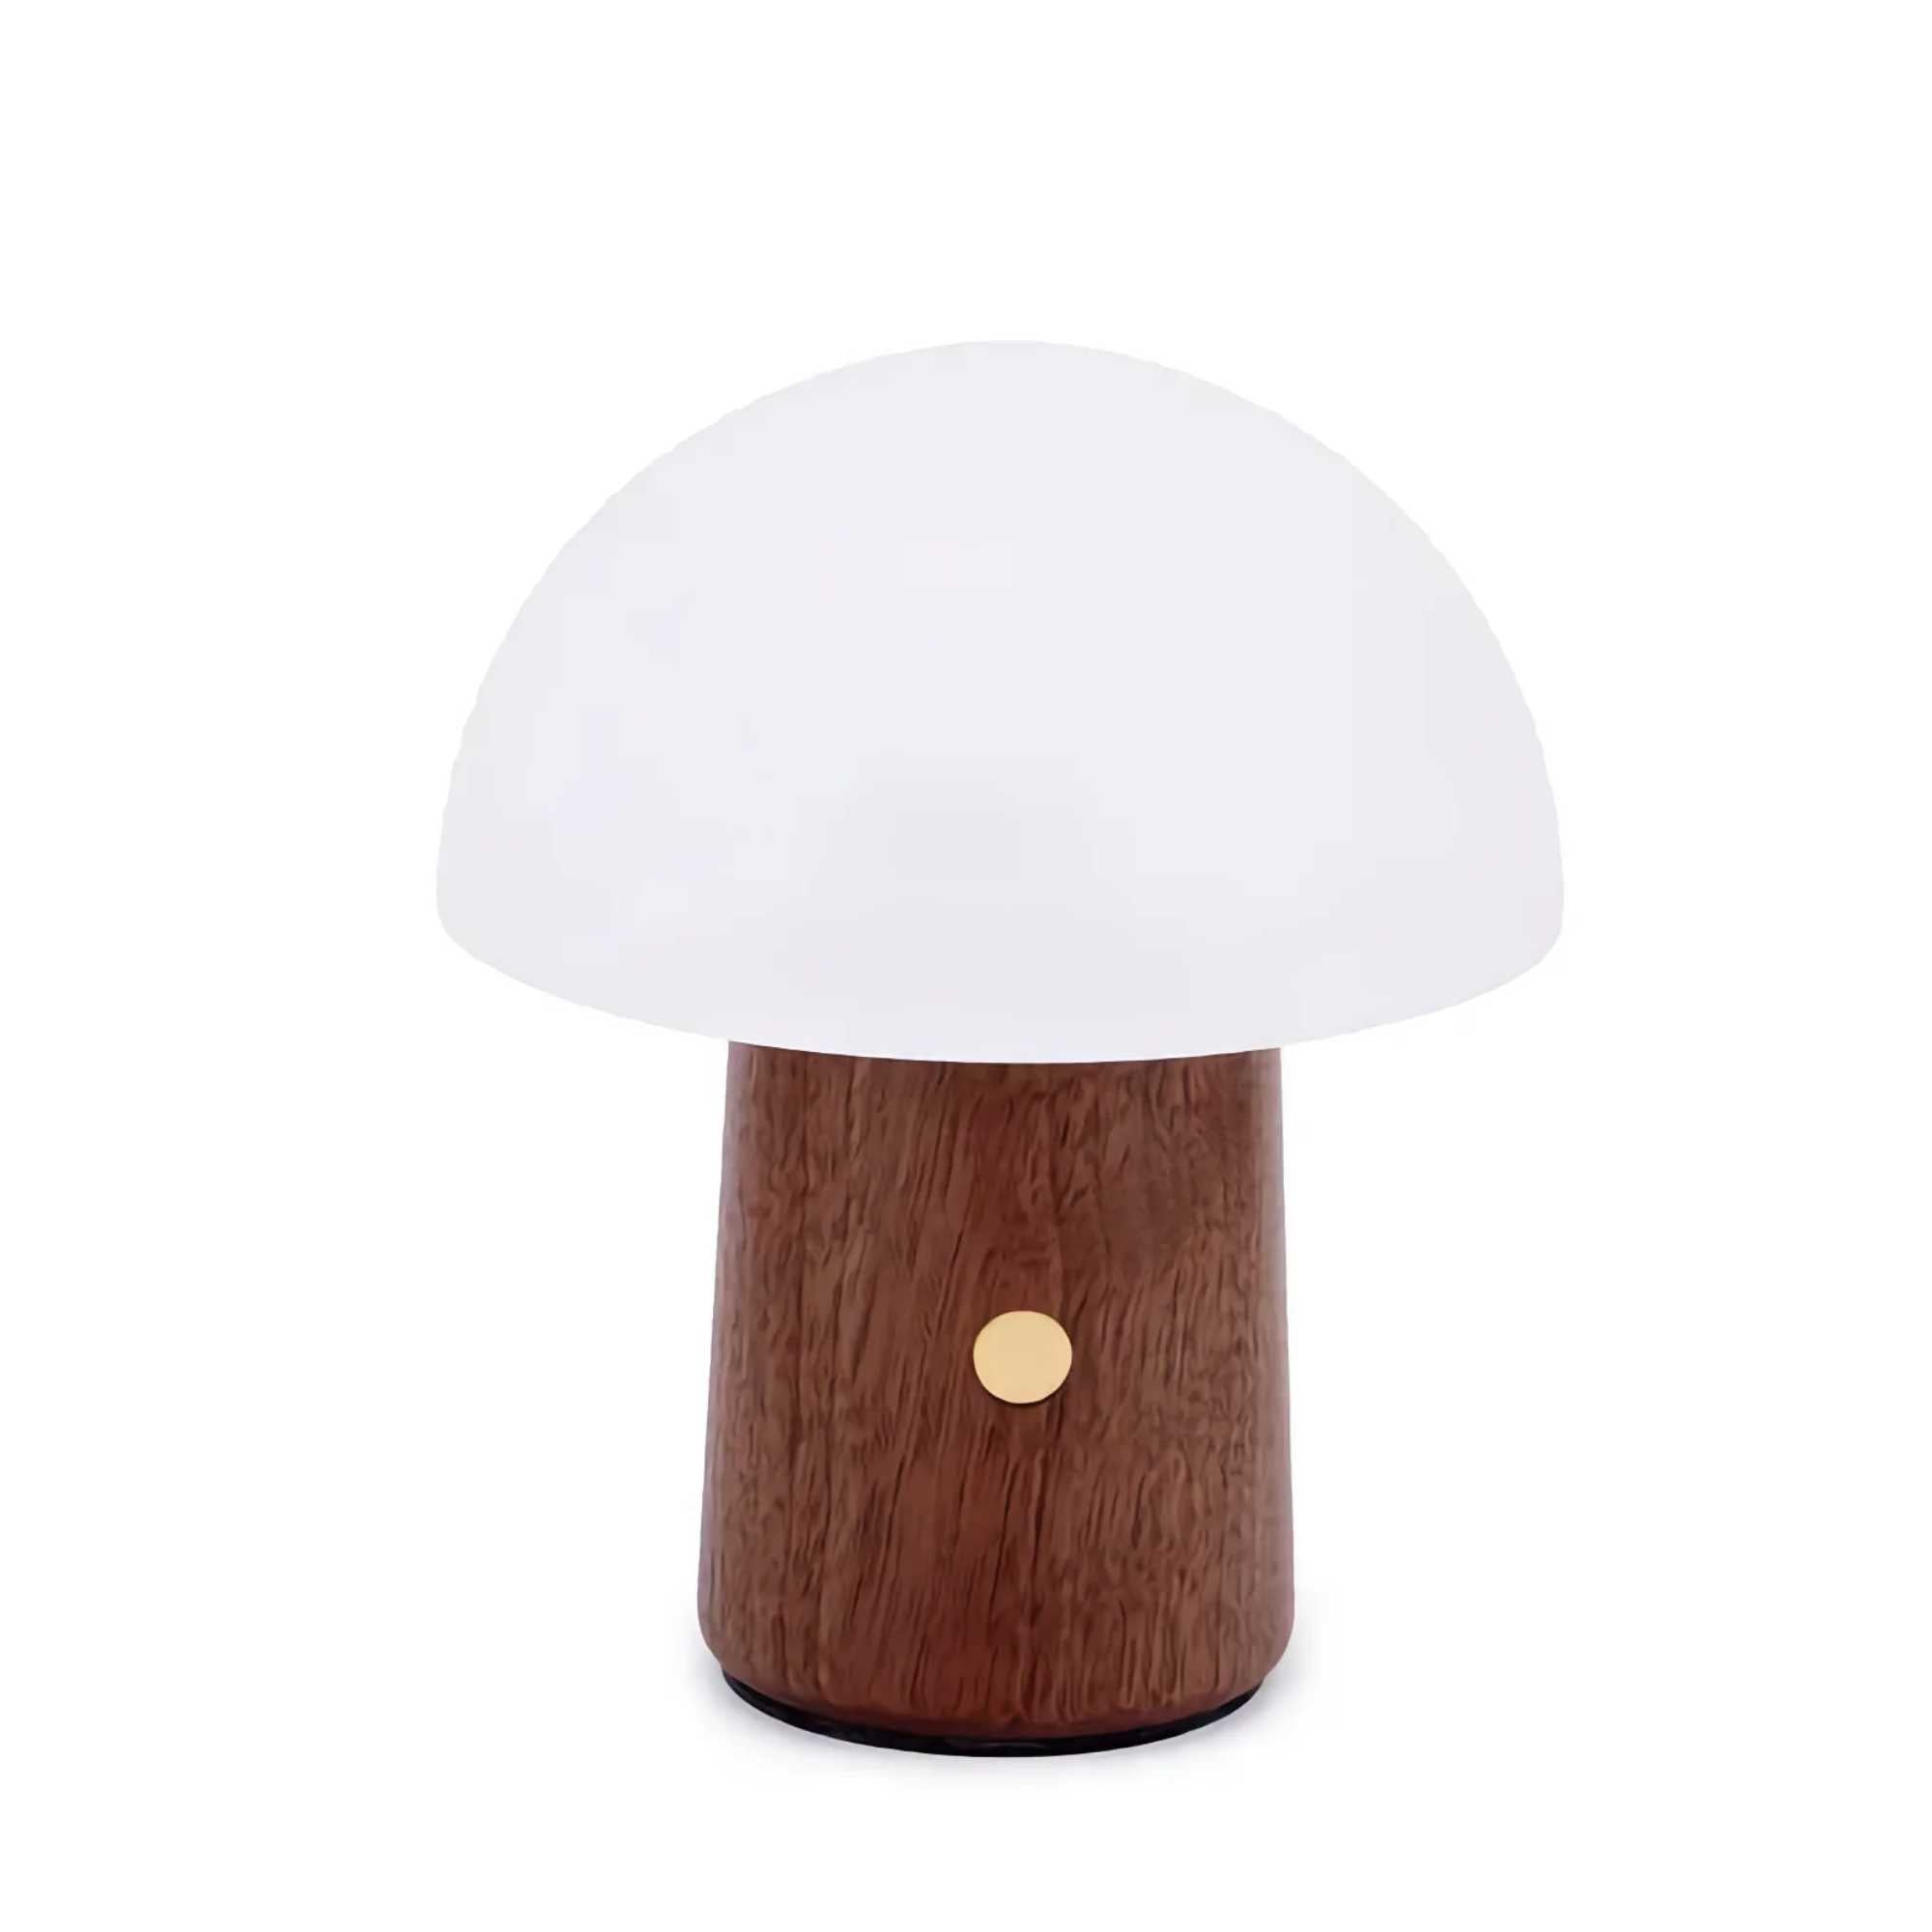 Gingko Design Alice Mushroom Lamp